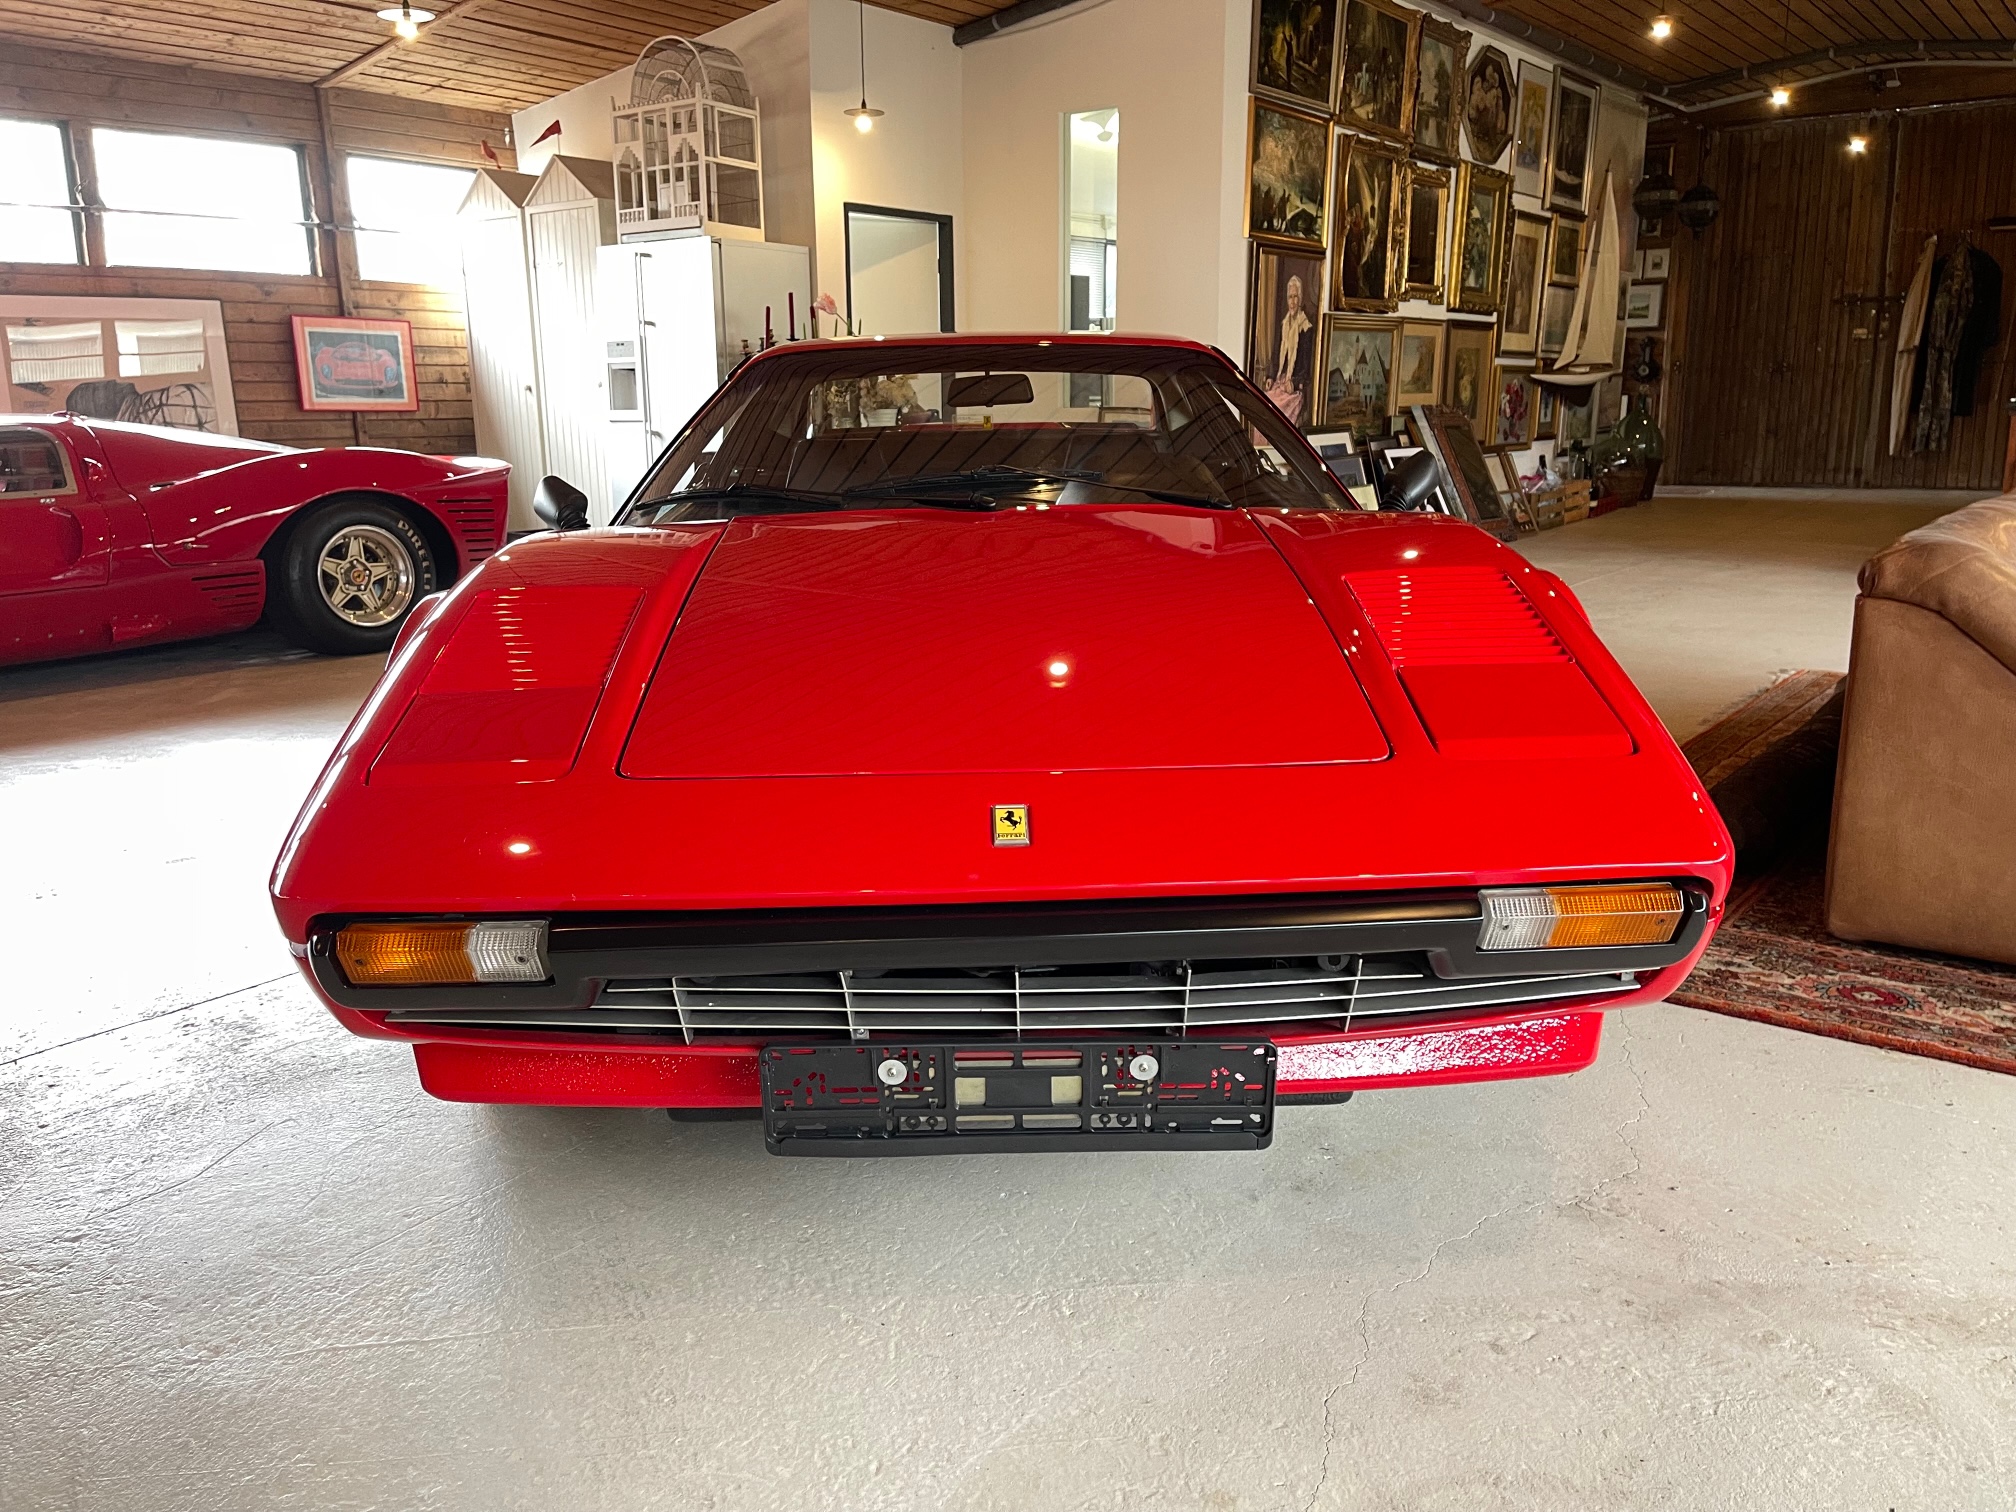 Ferrari 308 GTB 1980 zu verkaufen Europe